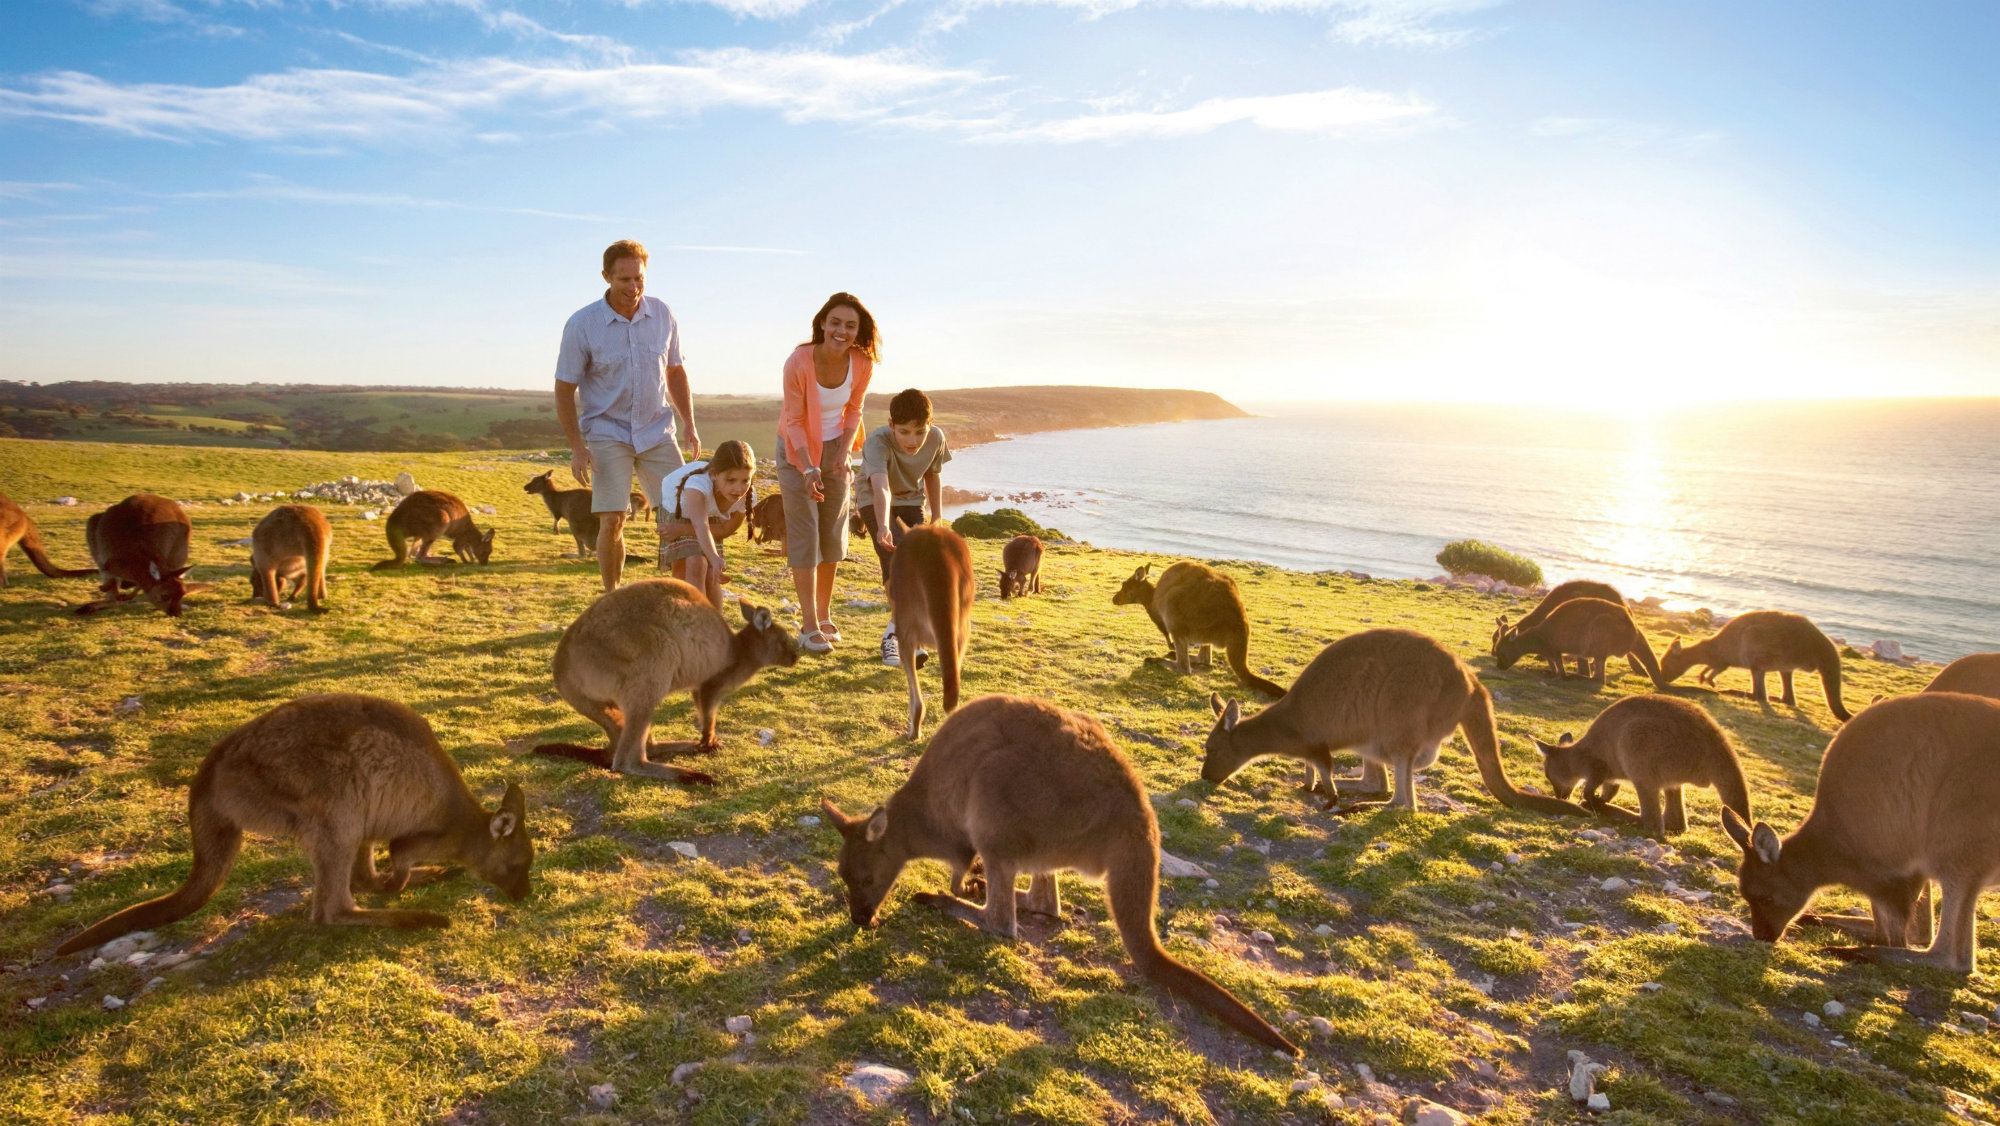 Kangaroo Island, Australia Tourism, Paradise Island, Paradise islands